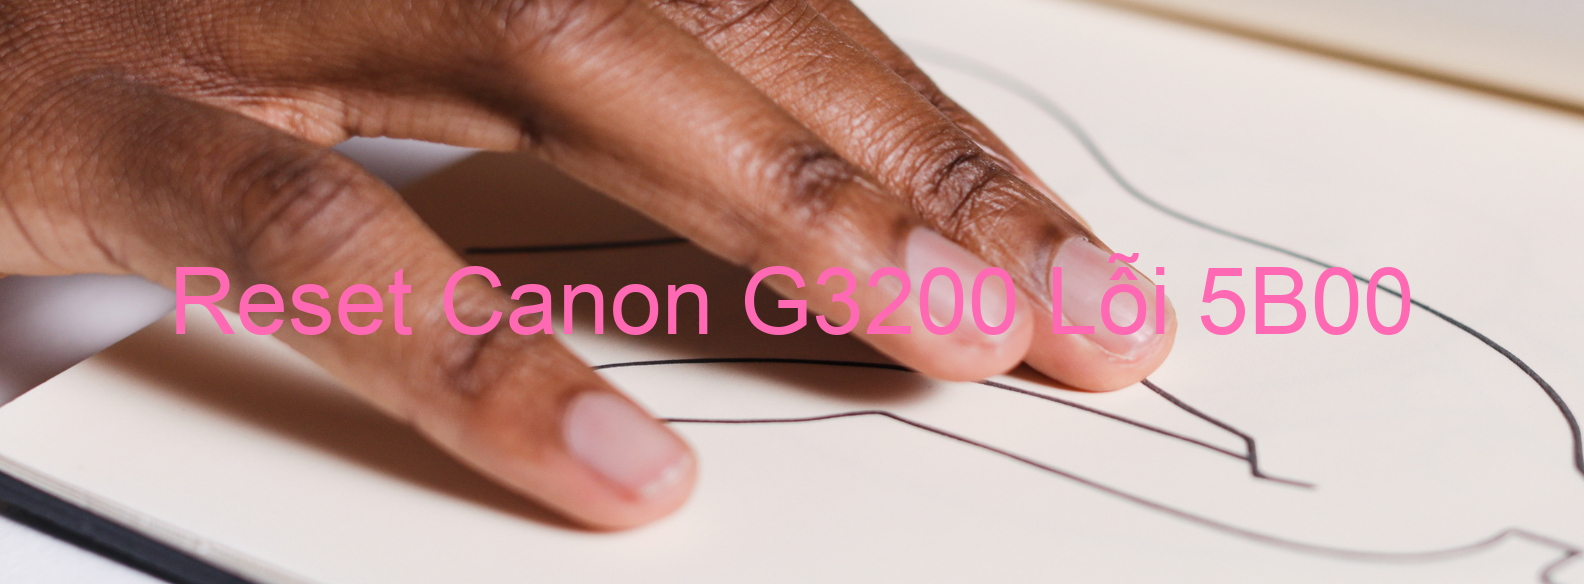 Reset Canon G3200 Lỗi 5B00